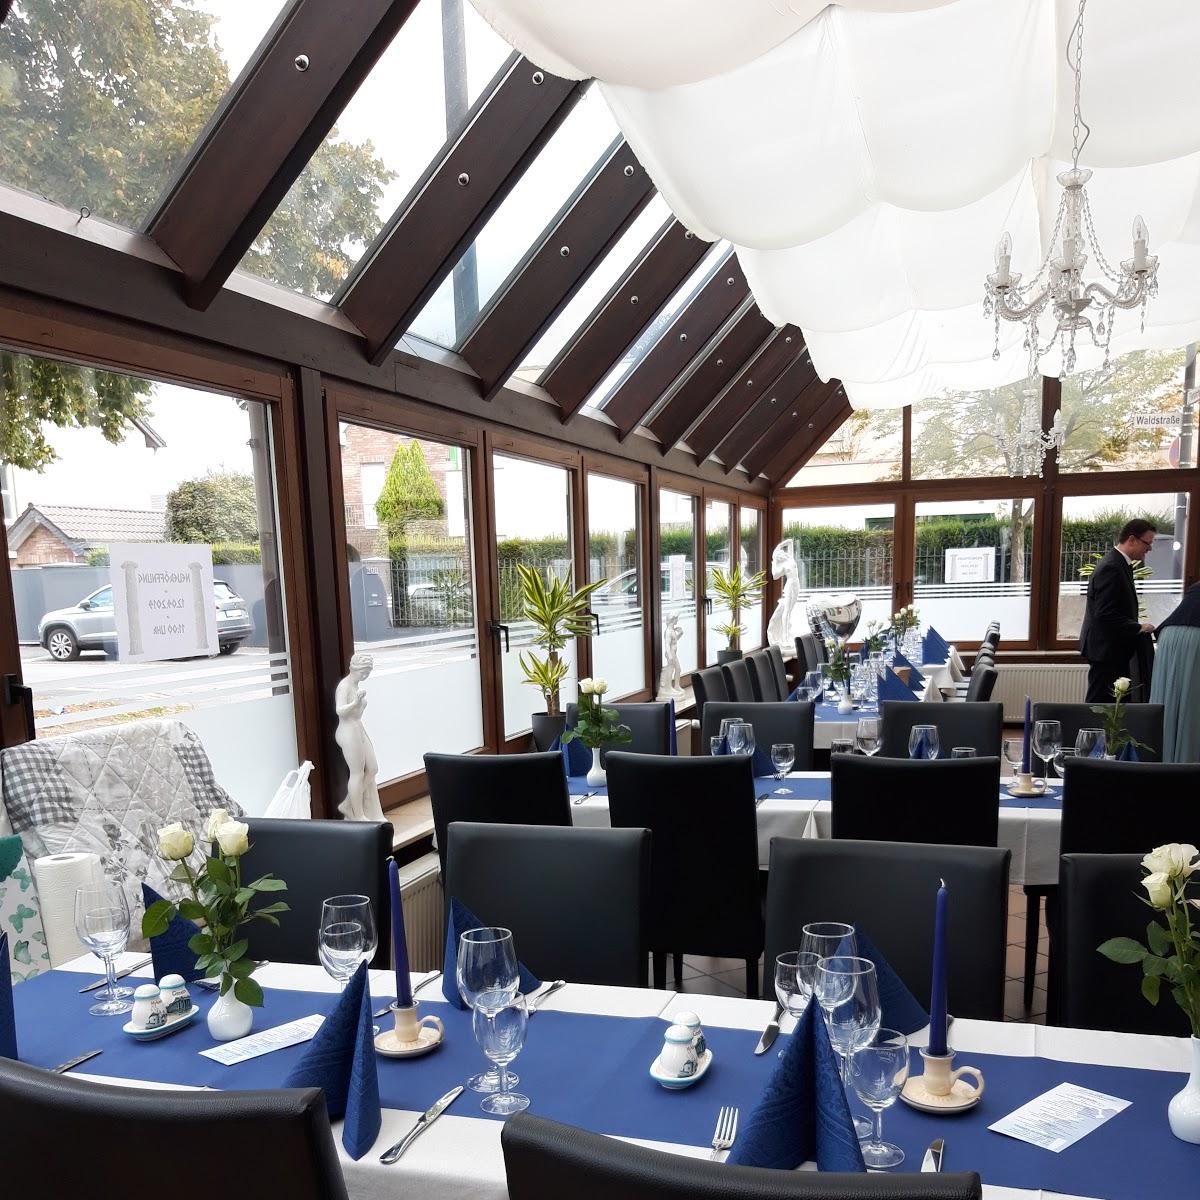 Restaurant "Olive im Waldschlößchen" in Troisdorf